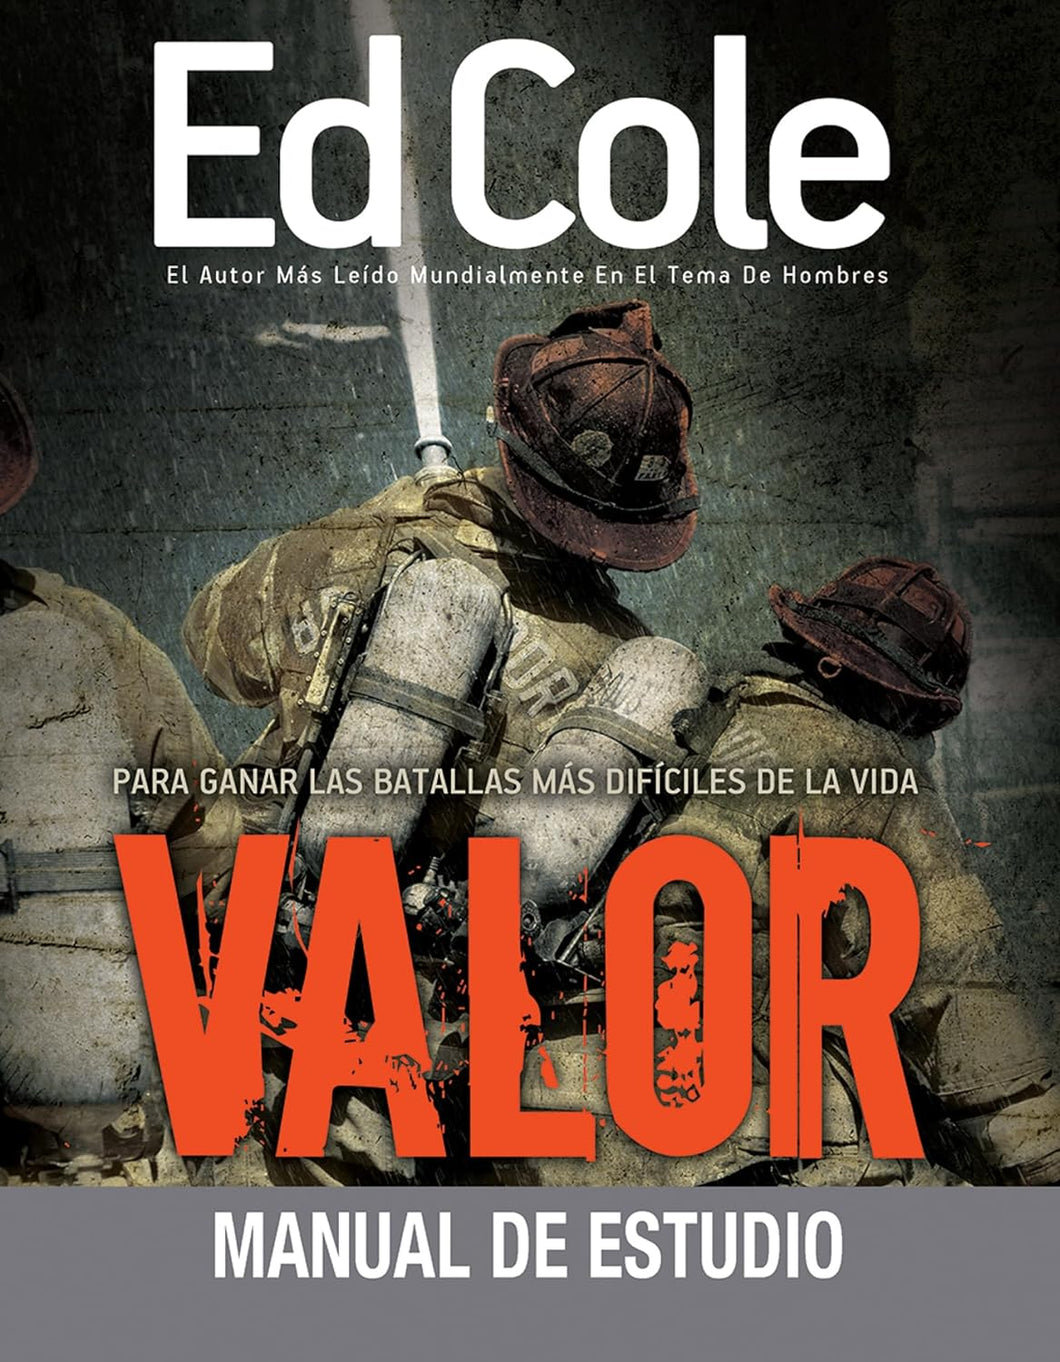 Valor - Manual de Estudio - Ed Cole